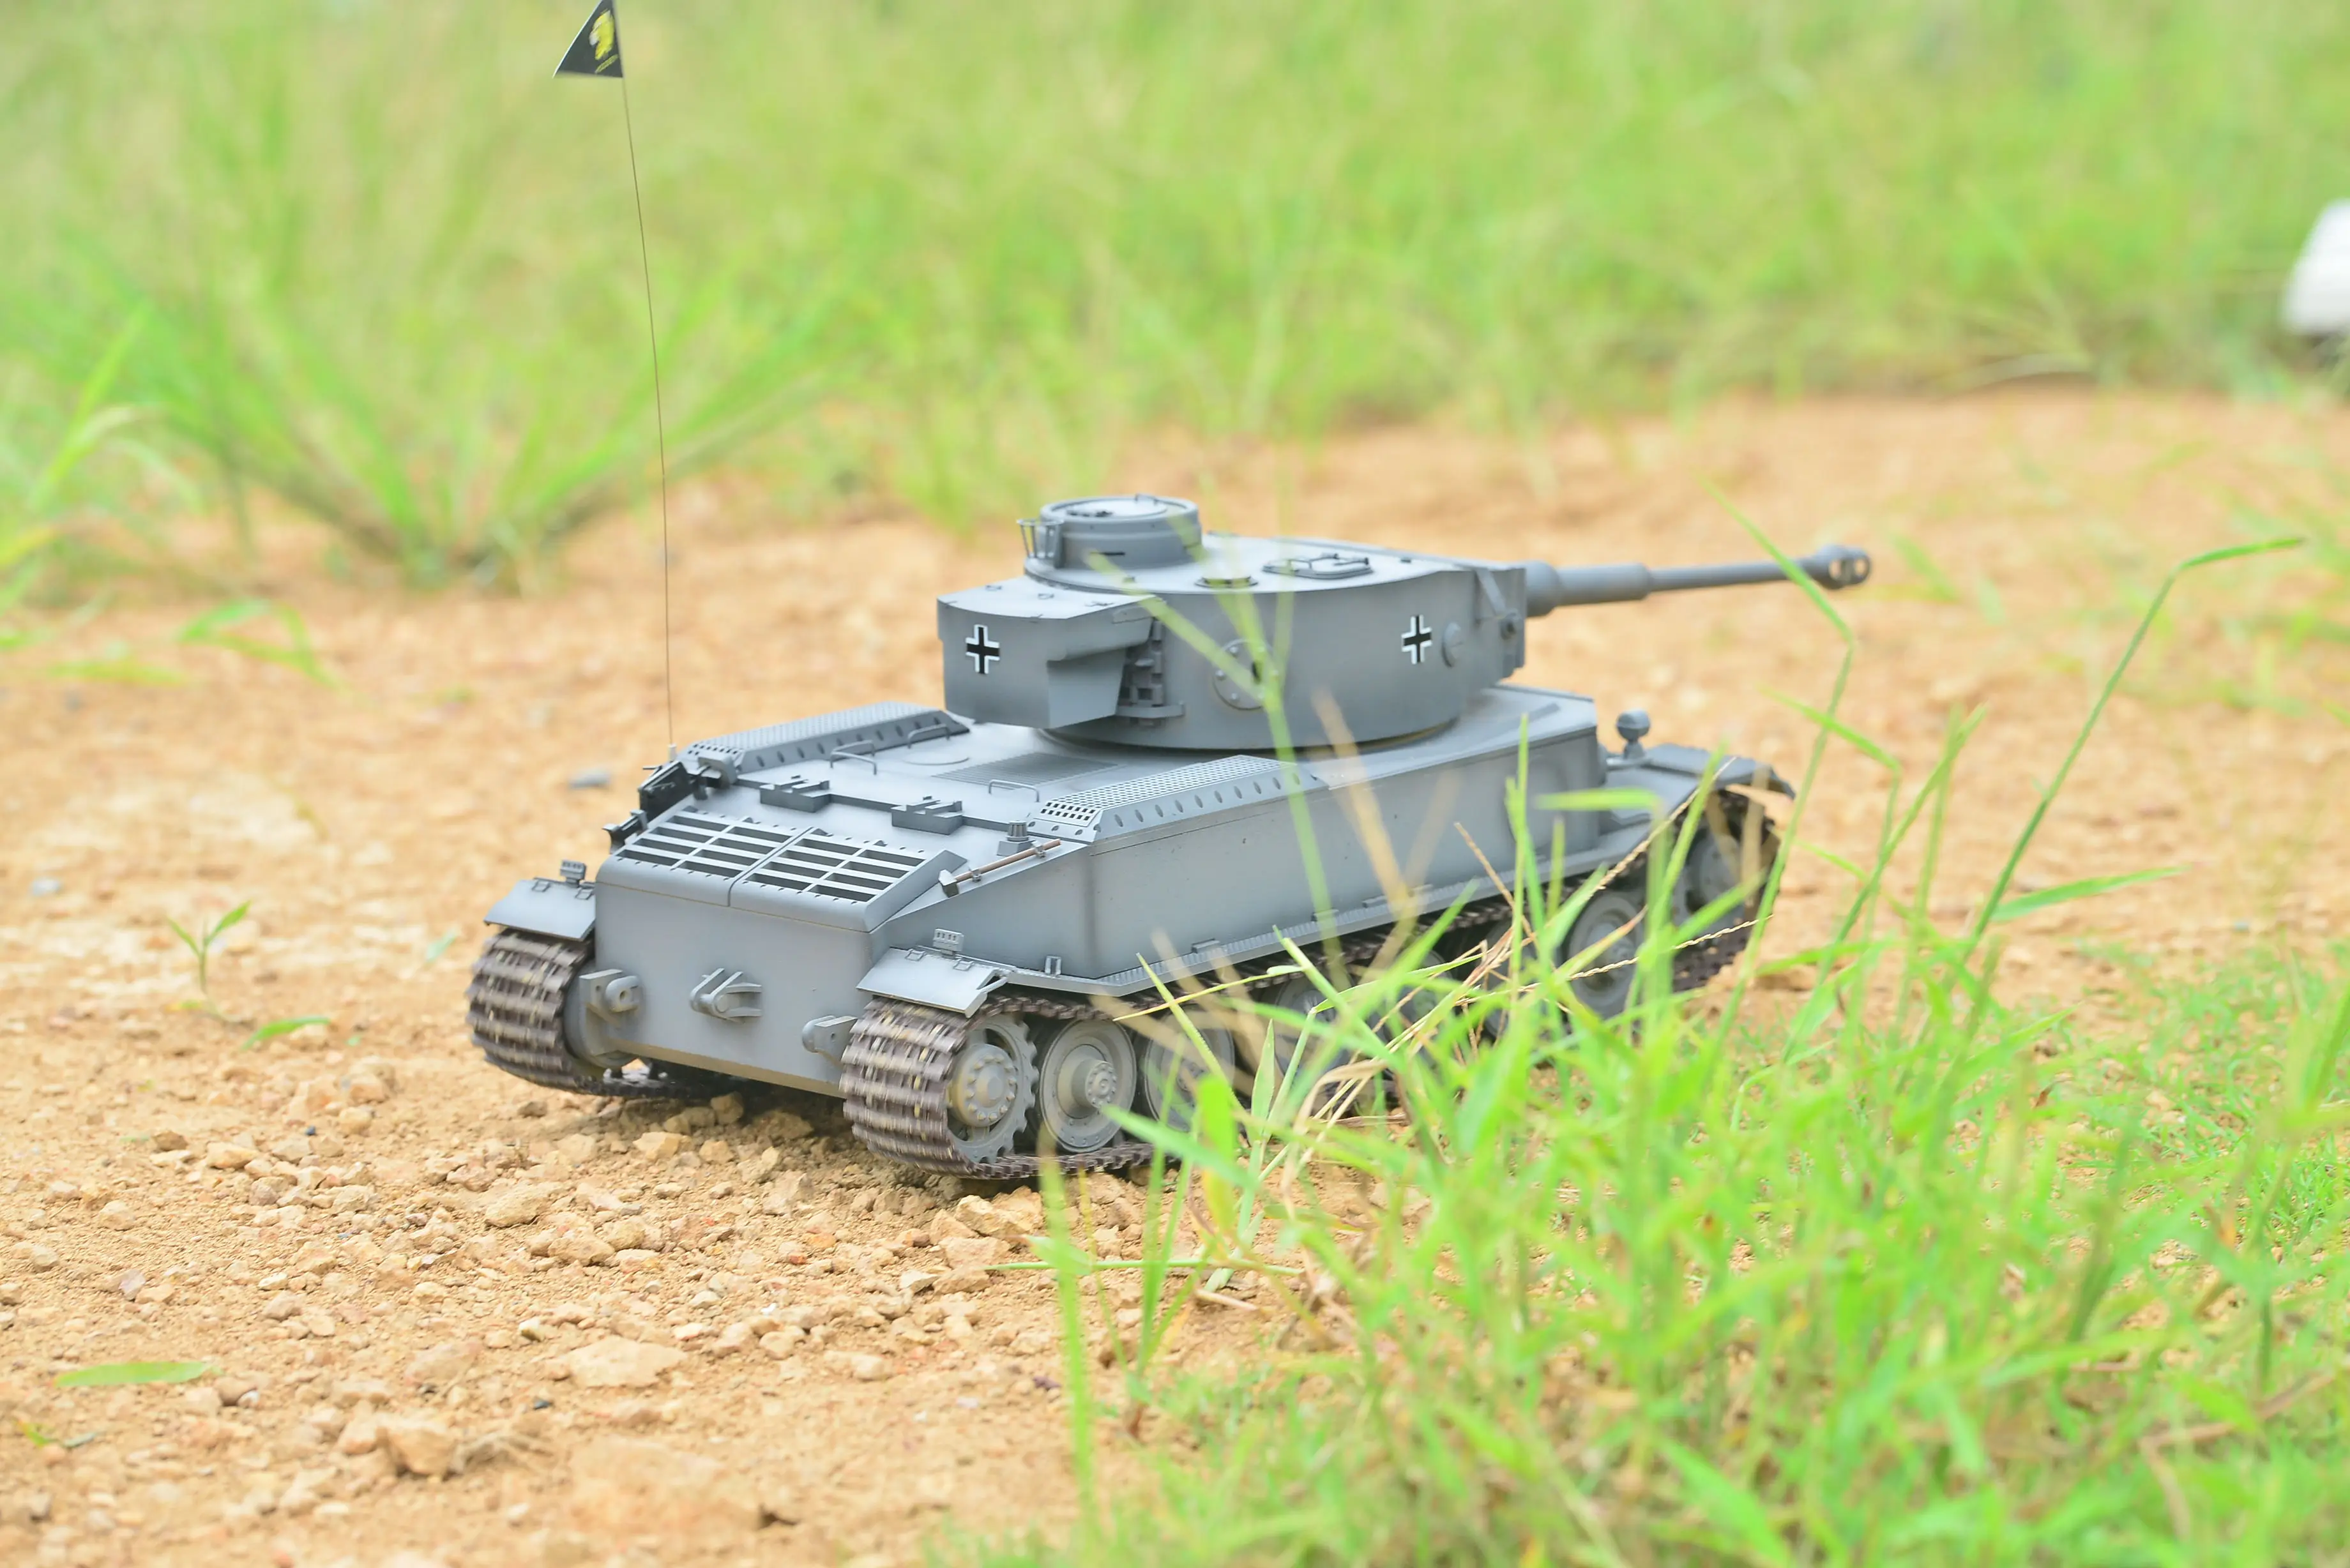 HOOBEN 1/16 rc Танк немецкий TigerP Tiger 2,4G VK 4501 пульт дистанционного управления боевые тяжелые танки с металлической коробкой передач, дым+ звук+ Битва